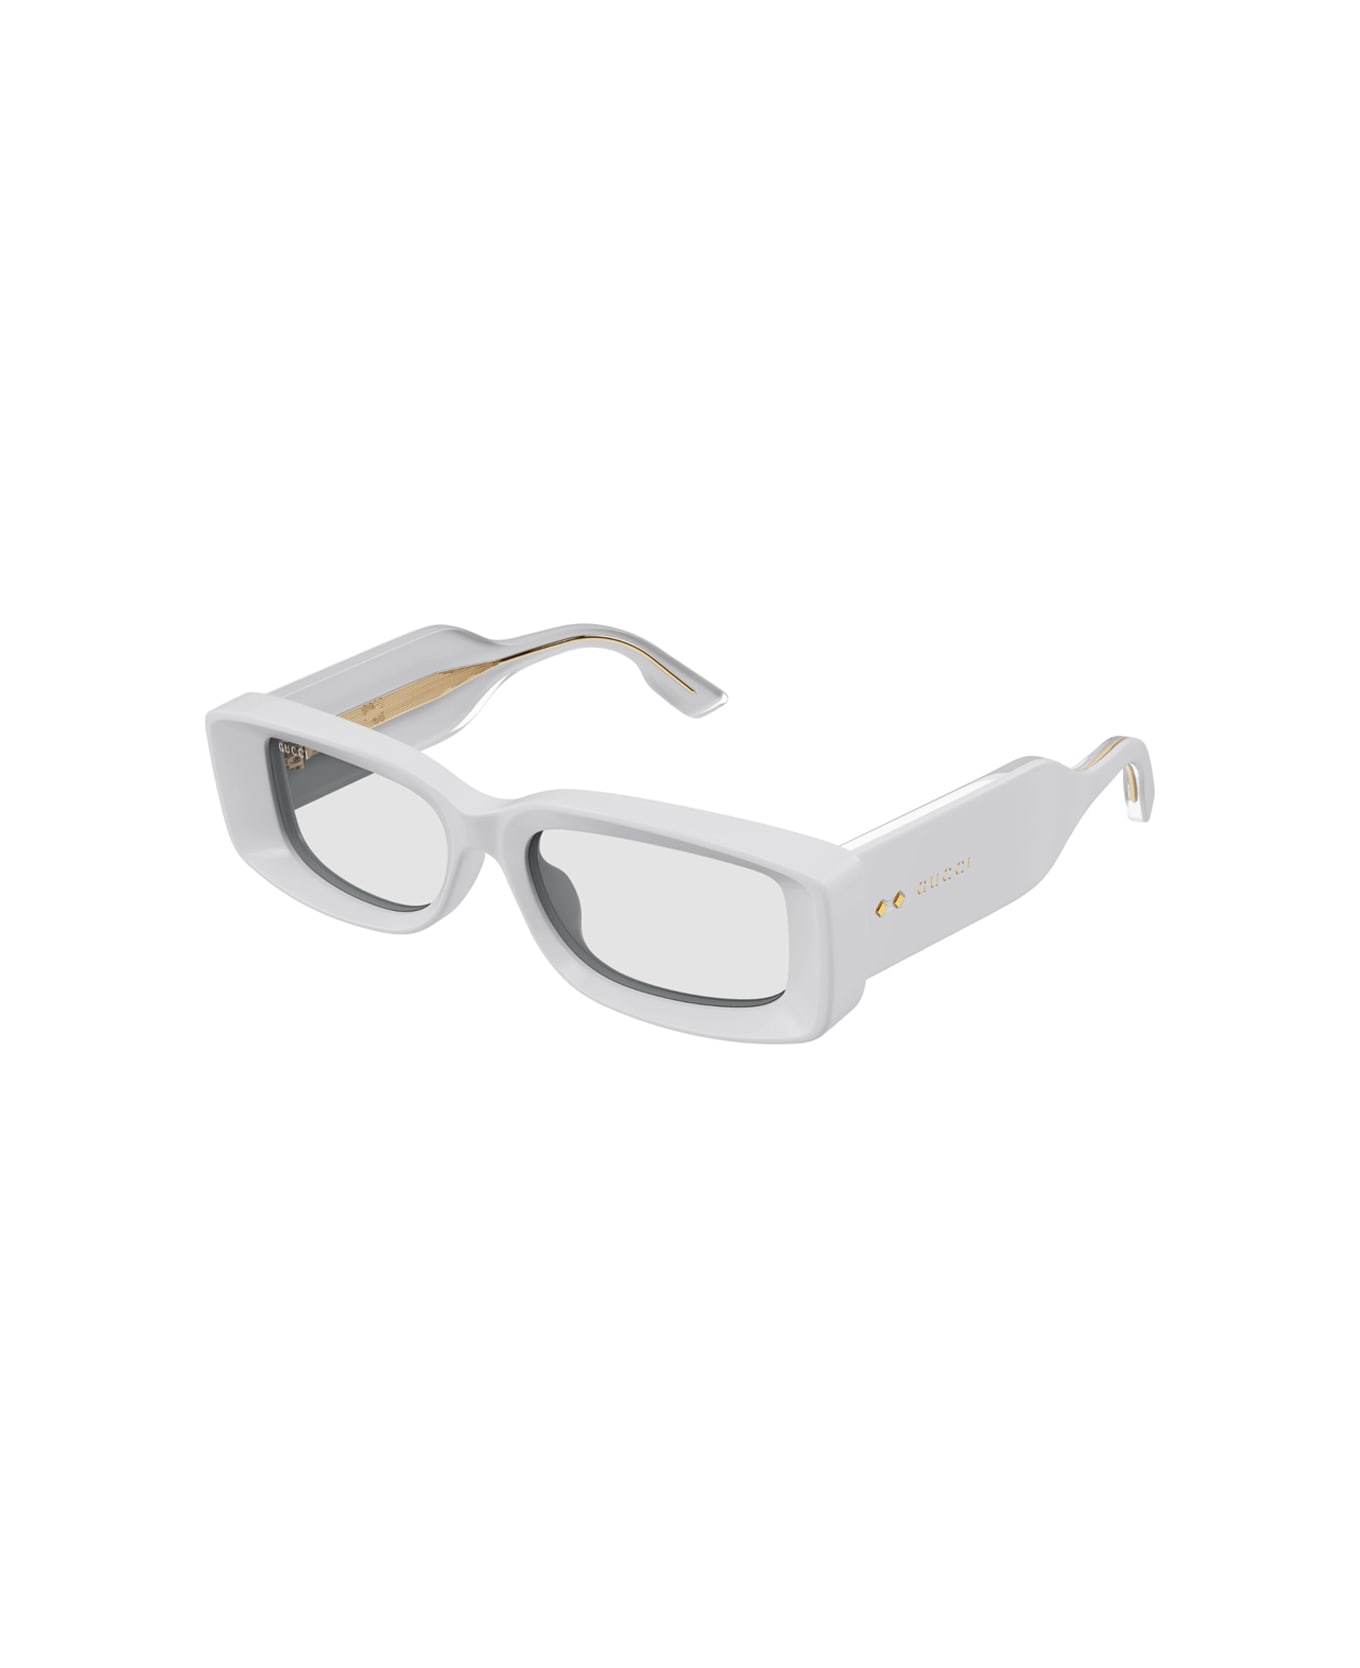 Gucci Eyewear Gg1528s 005 Sunglasses - Grigio サングラス